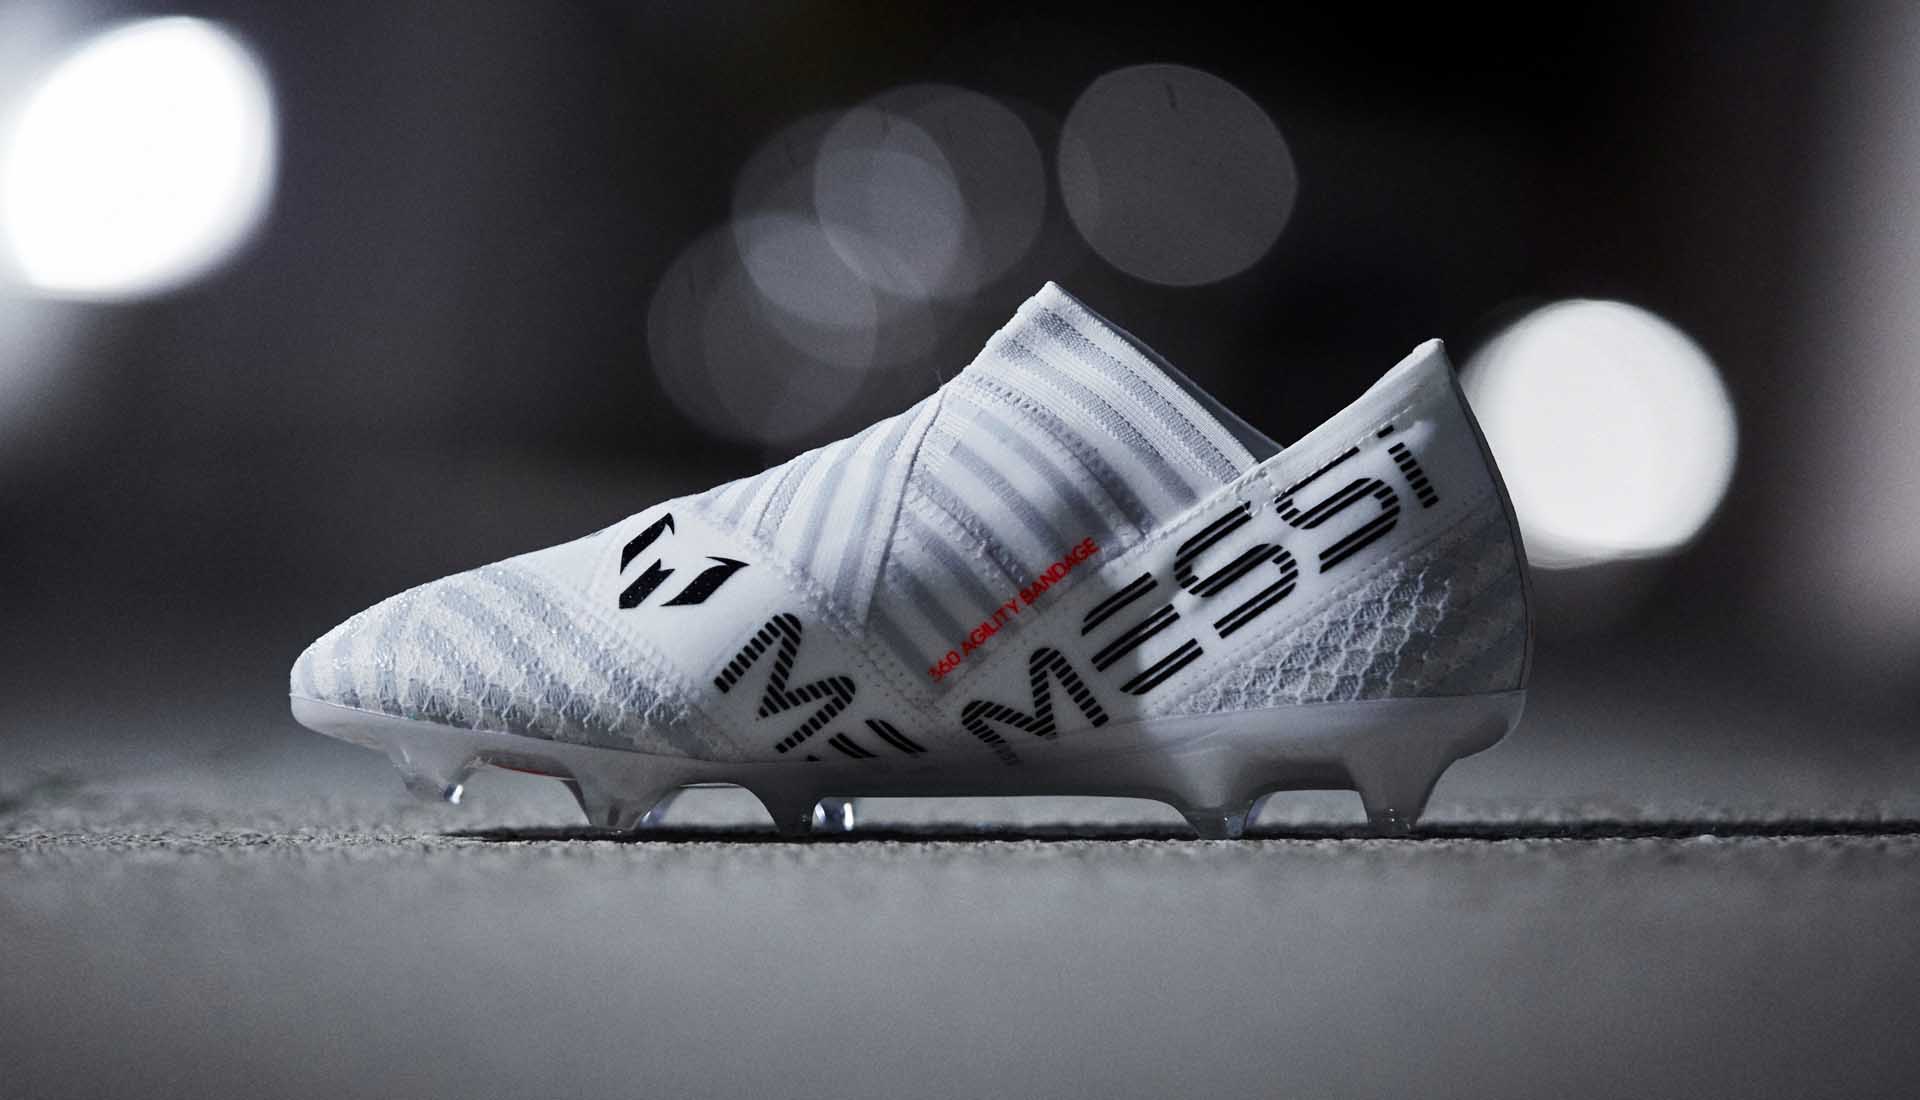 Cận cảnh giày đá banh chính hãng Messi sử dụng để thi đấu